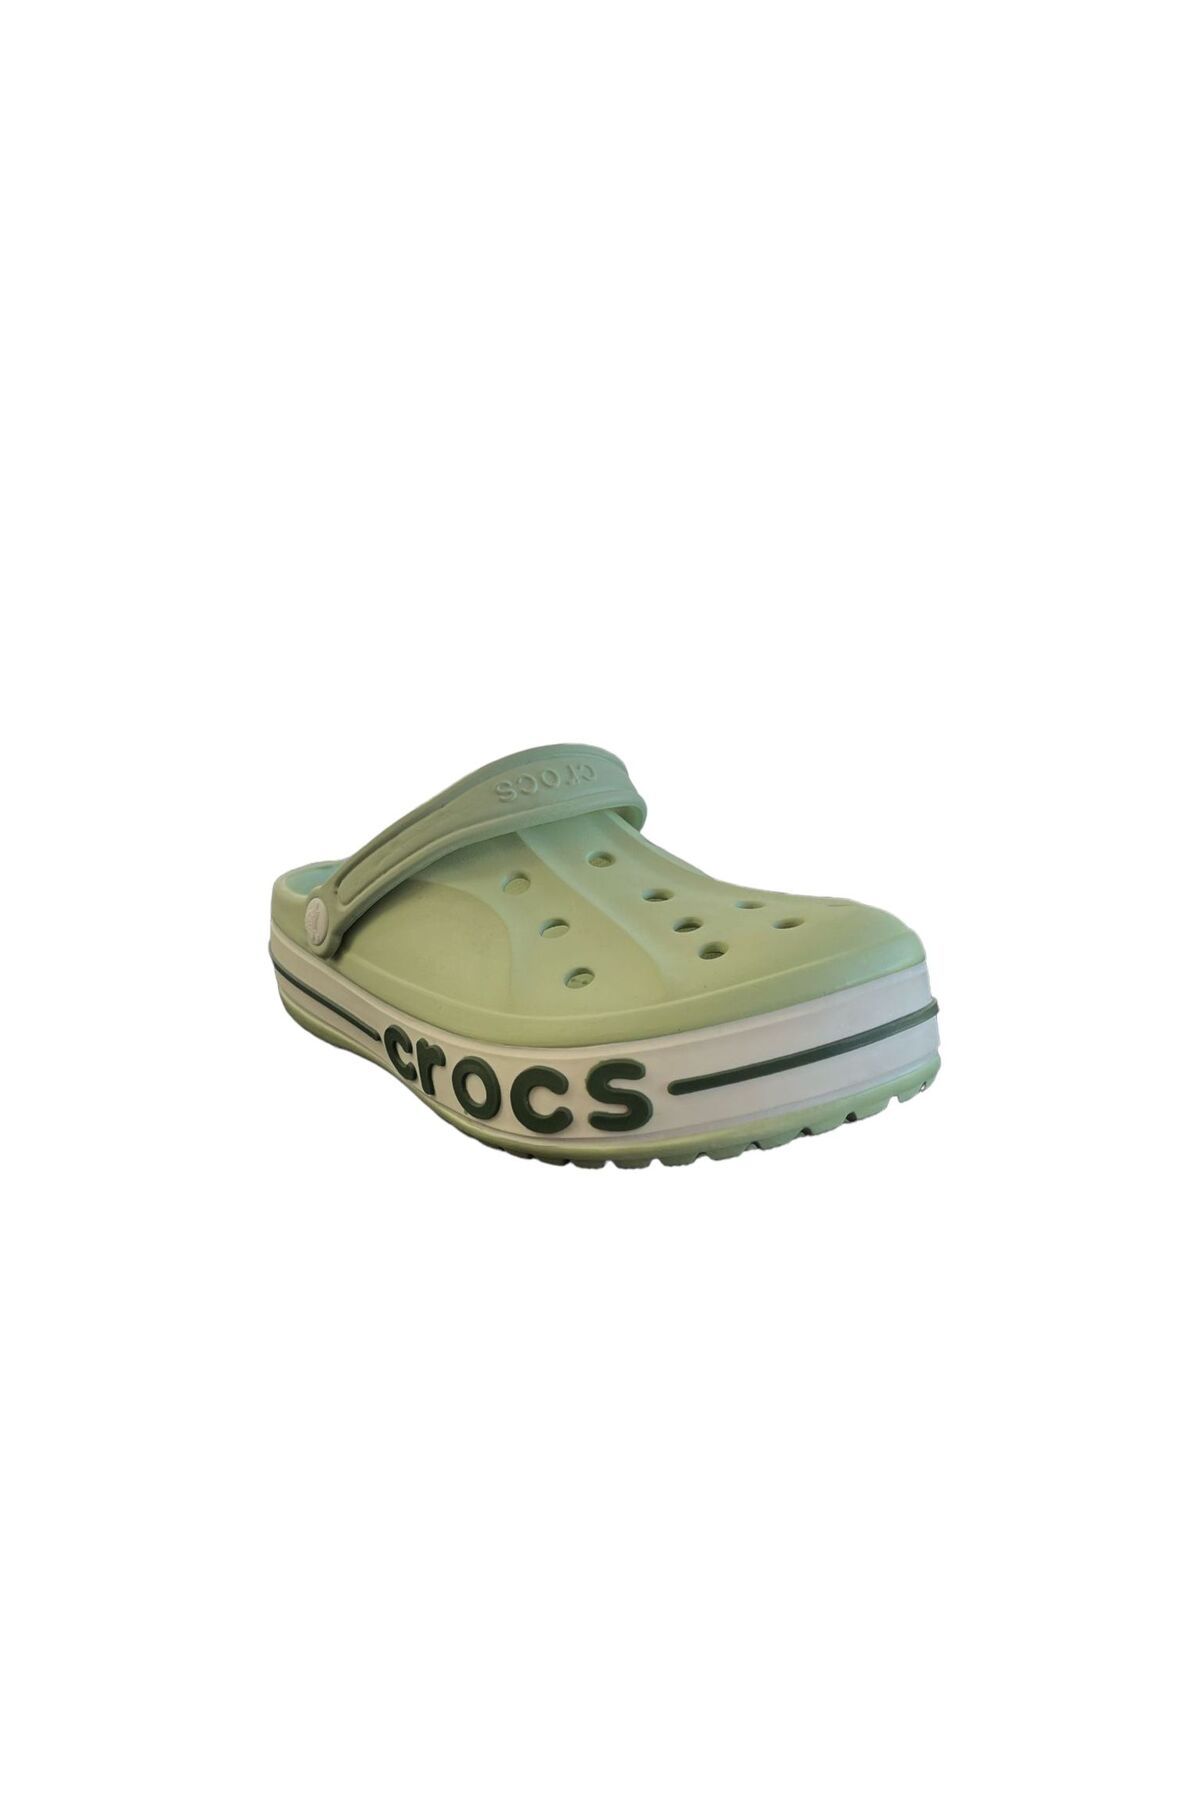 Crocs سبز بیابان